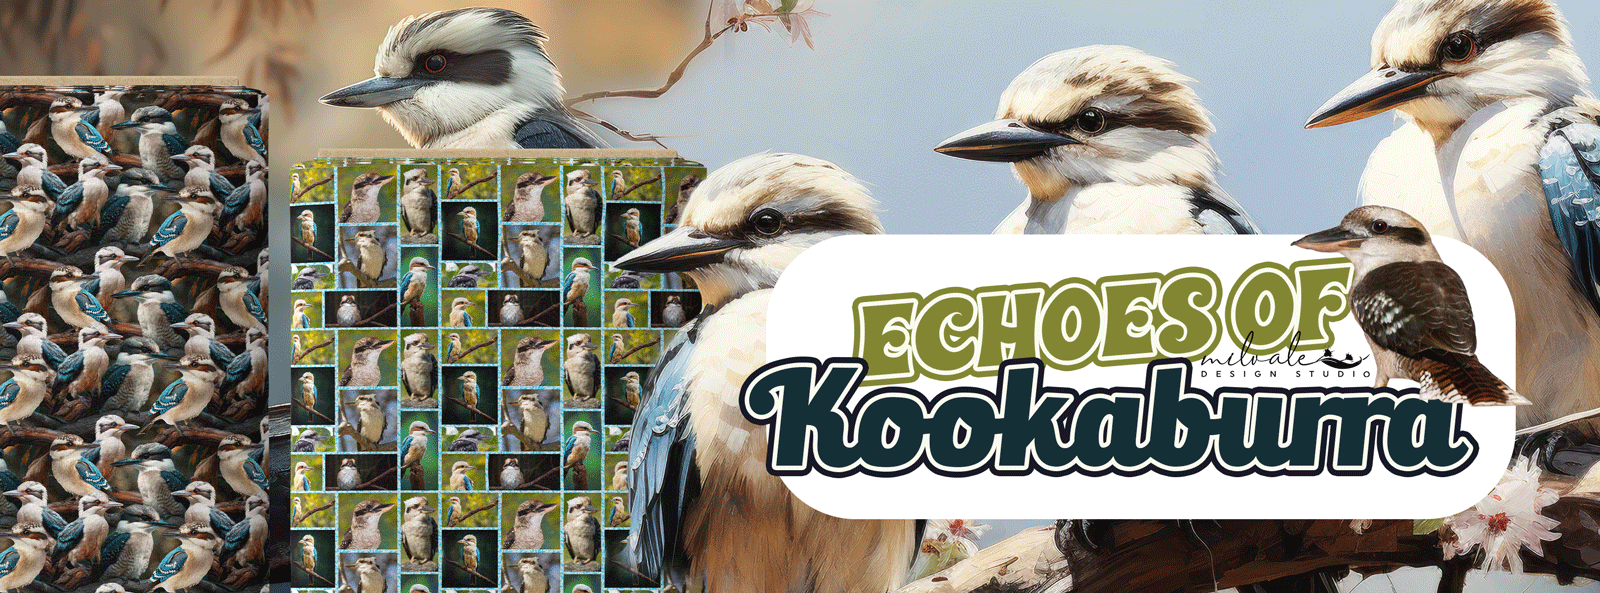 Echoes of Kookaburra - Website Banner